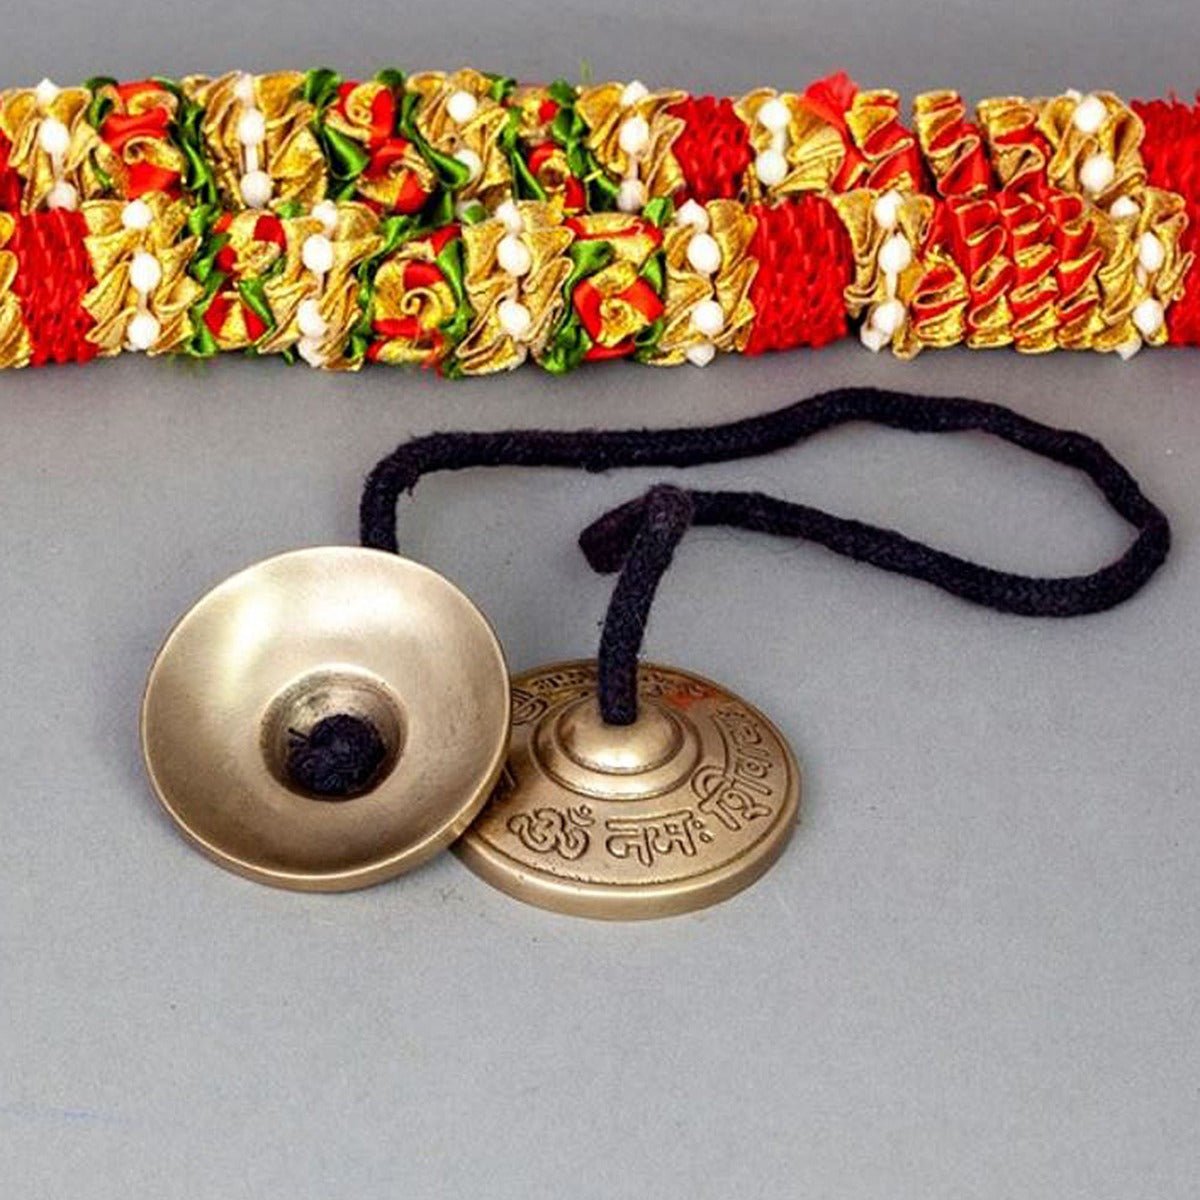 Brass Bell, 2 - 2.5 inch